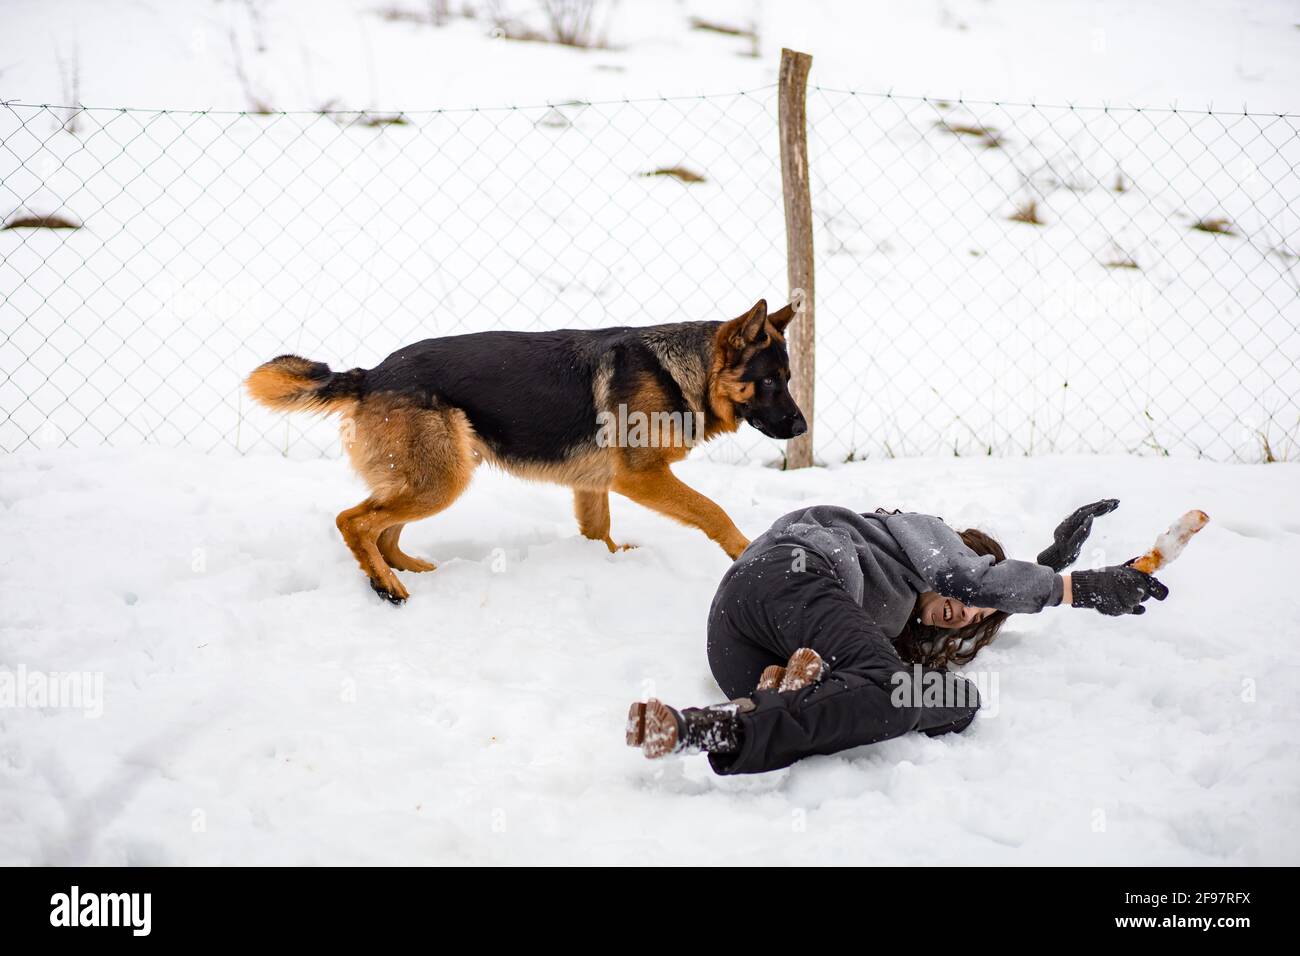 Jeune fille de brunette jouant avec son chien de berger allemand. L'hiver Banque D'Images